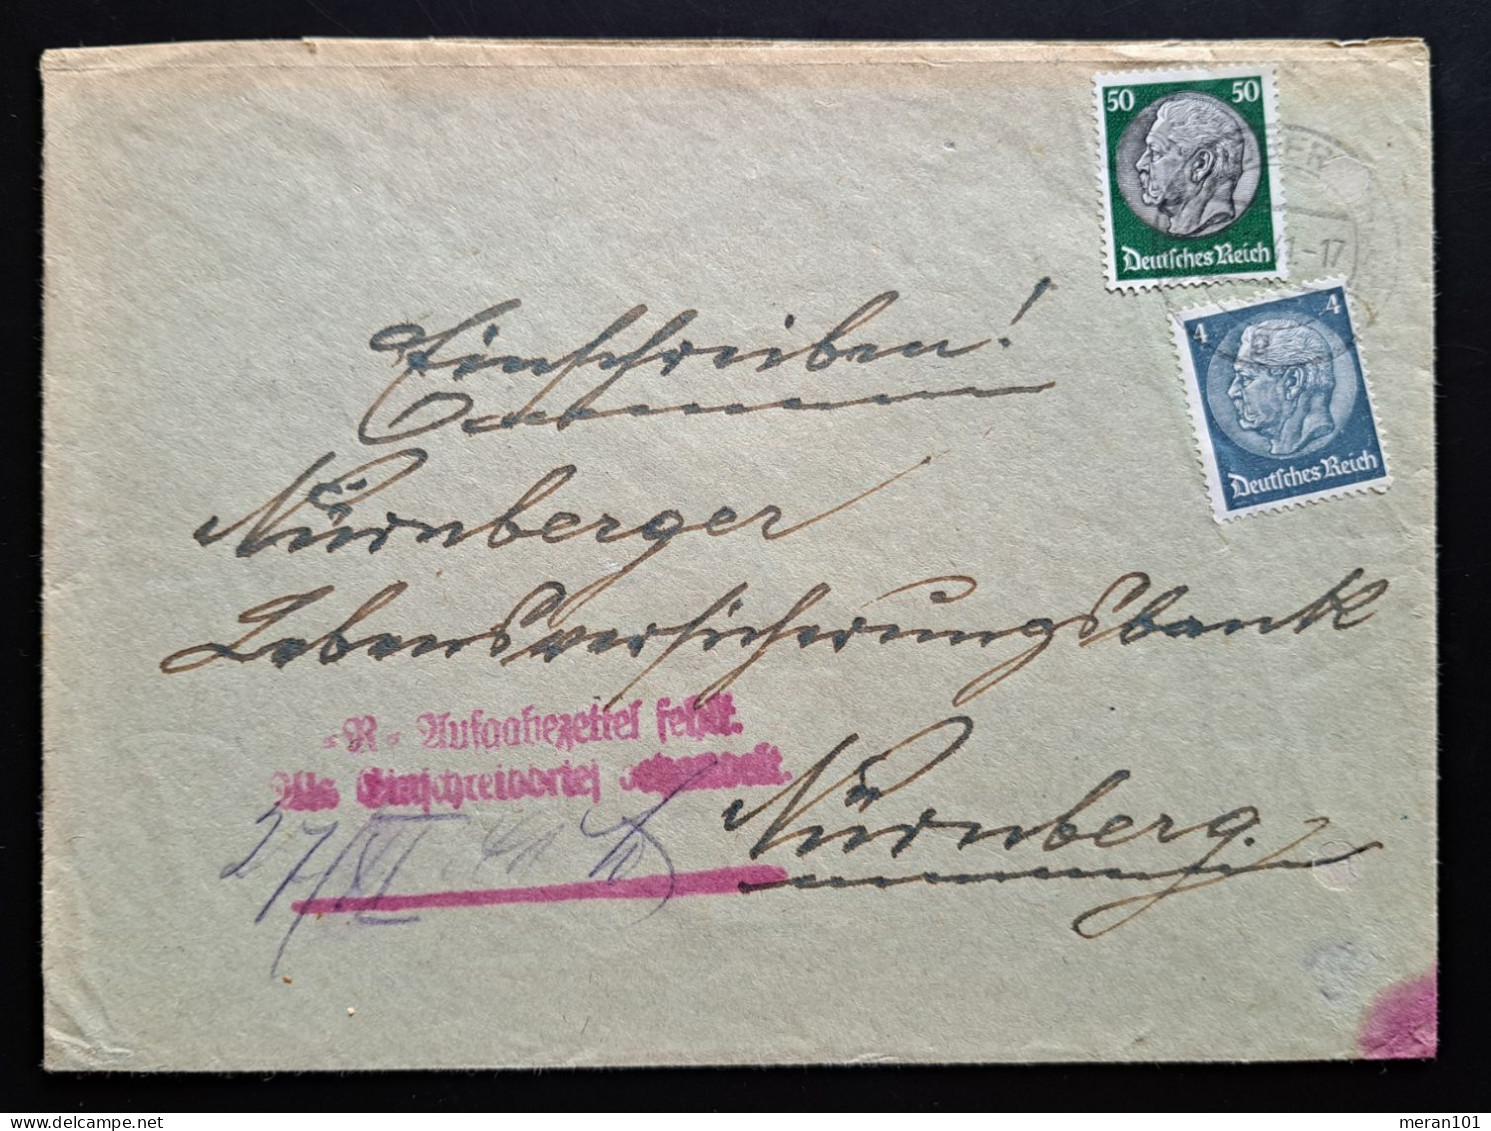 Deutsches Reich 1941, Brief Einschreibe-Stempel MiF - Storia Postale